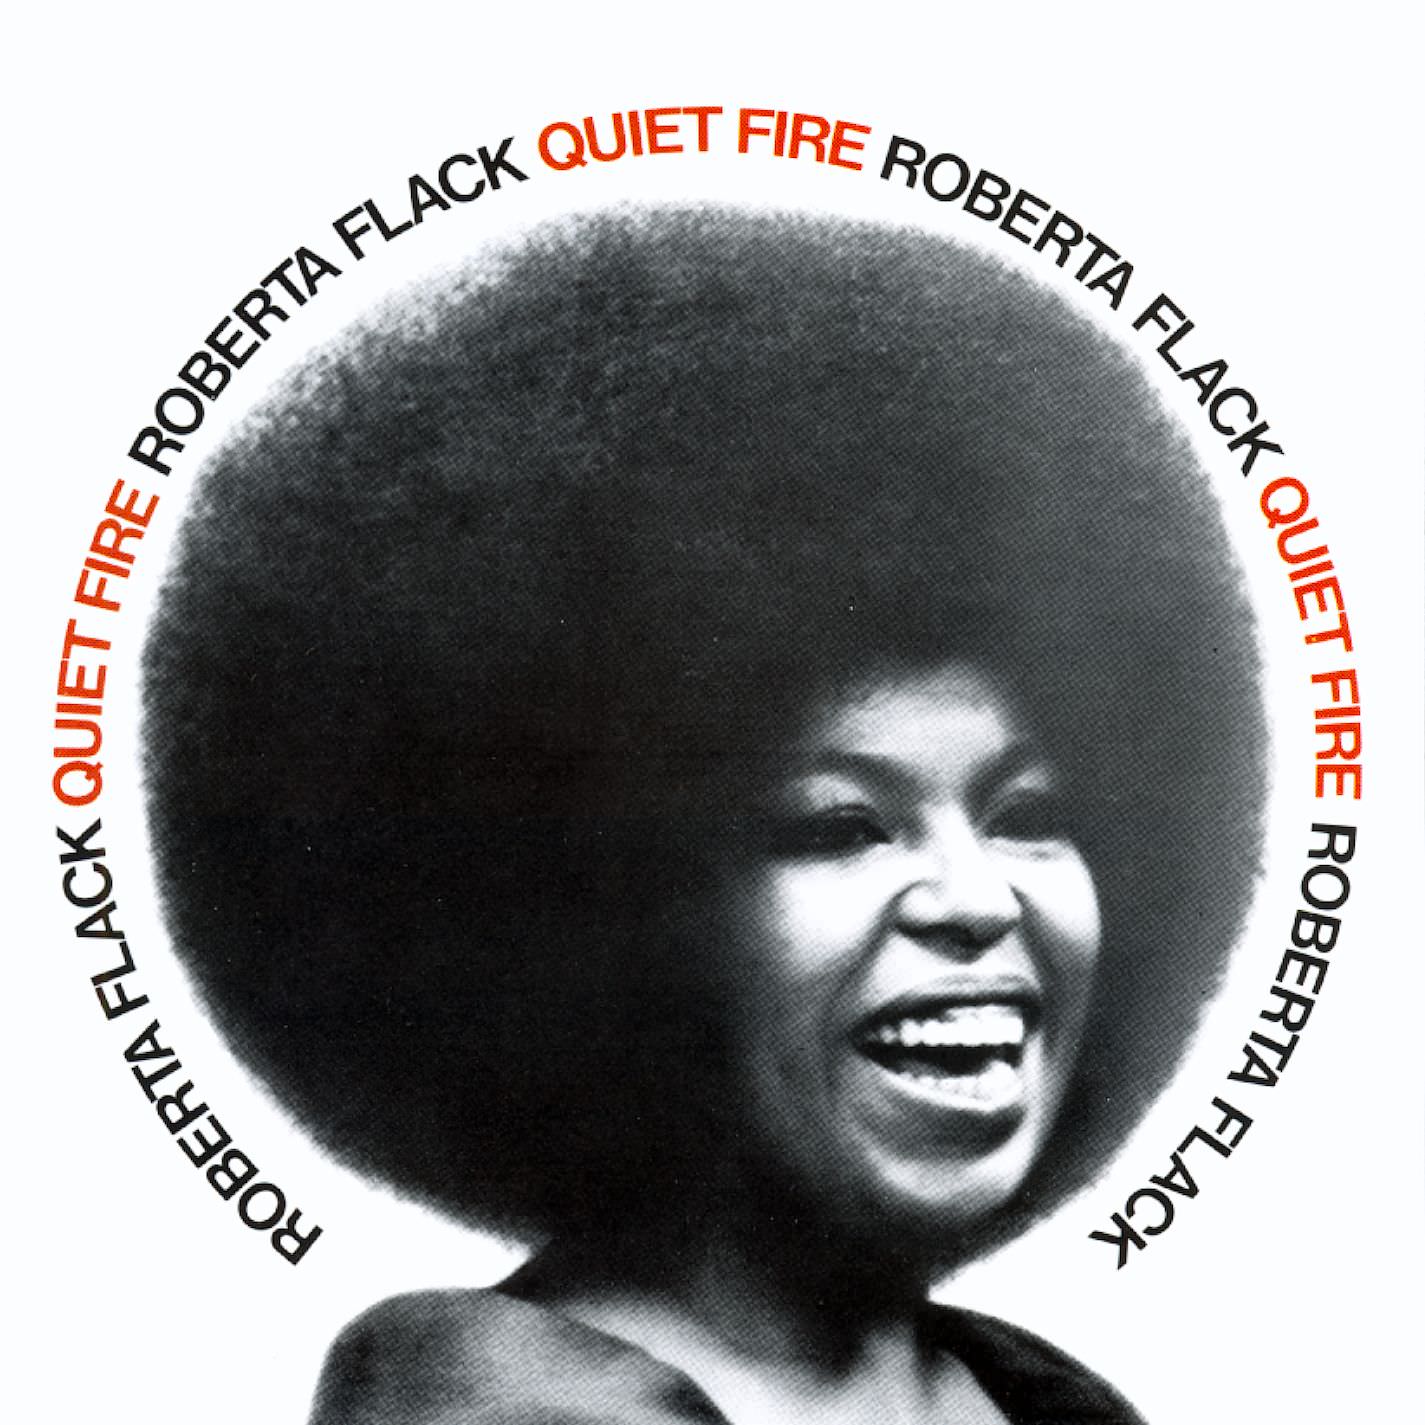 Roberta Flack - Quiet Fire (1971/2015) [HDTracks FLAC 24bit/192kHz]